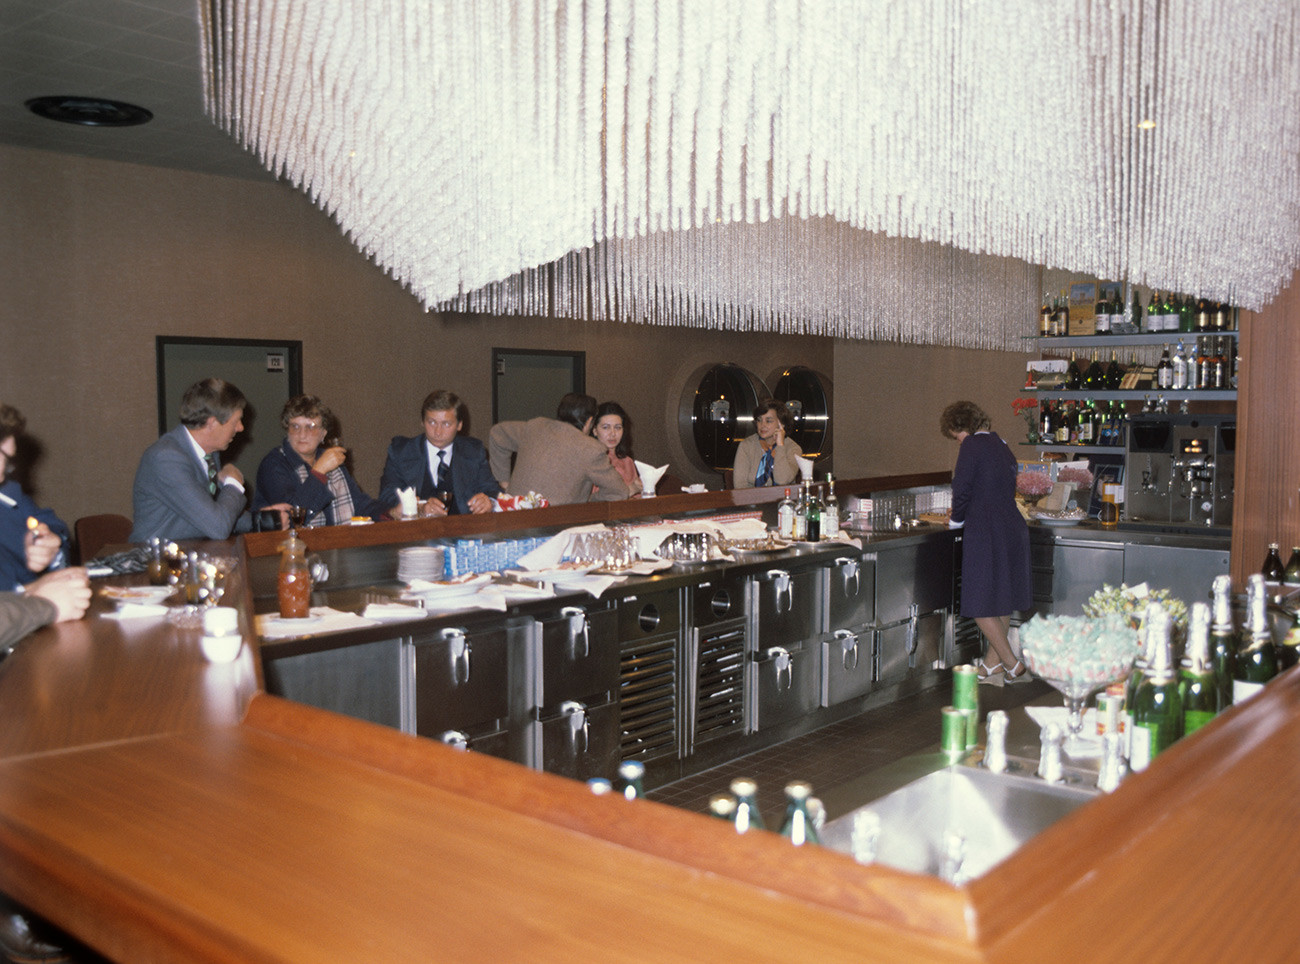 Bar para los pasageros, los años 1980.